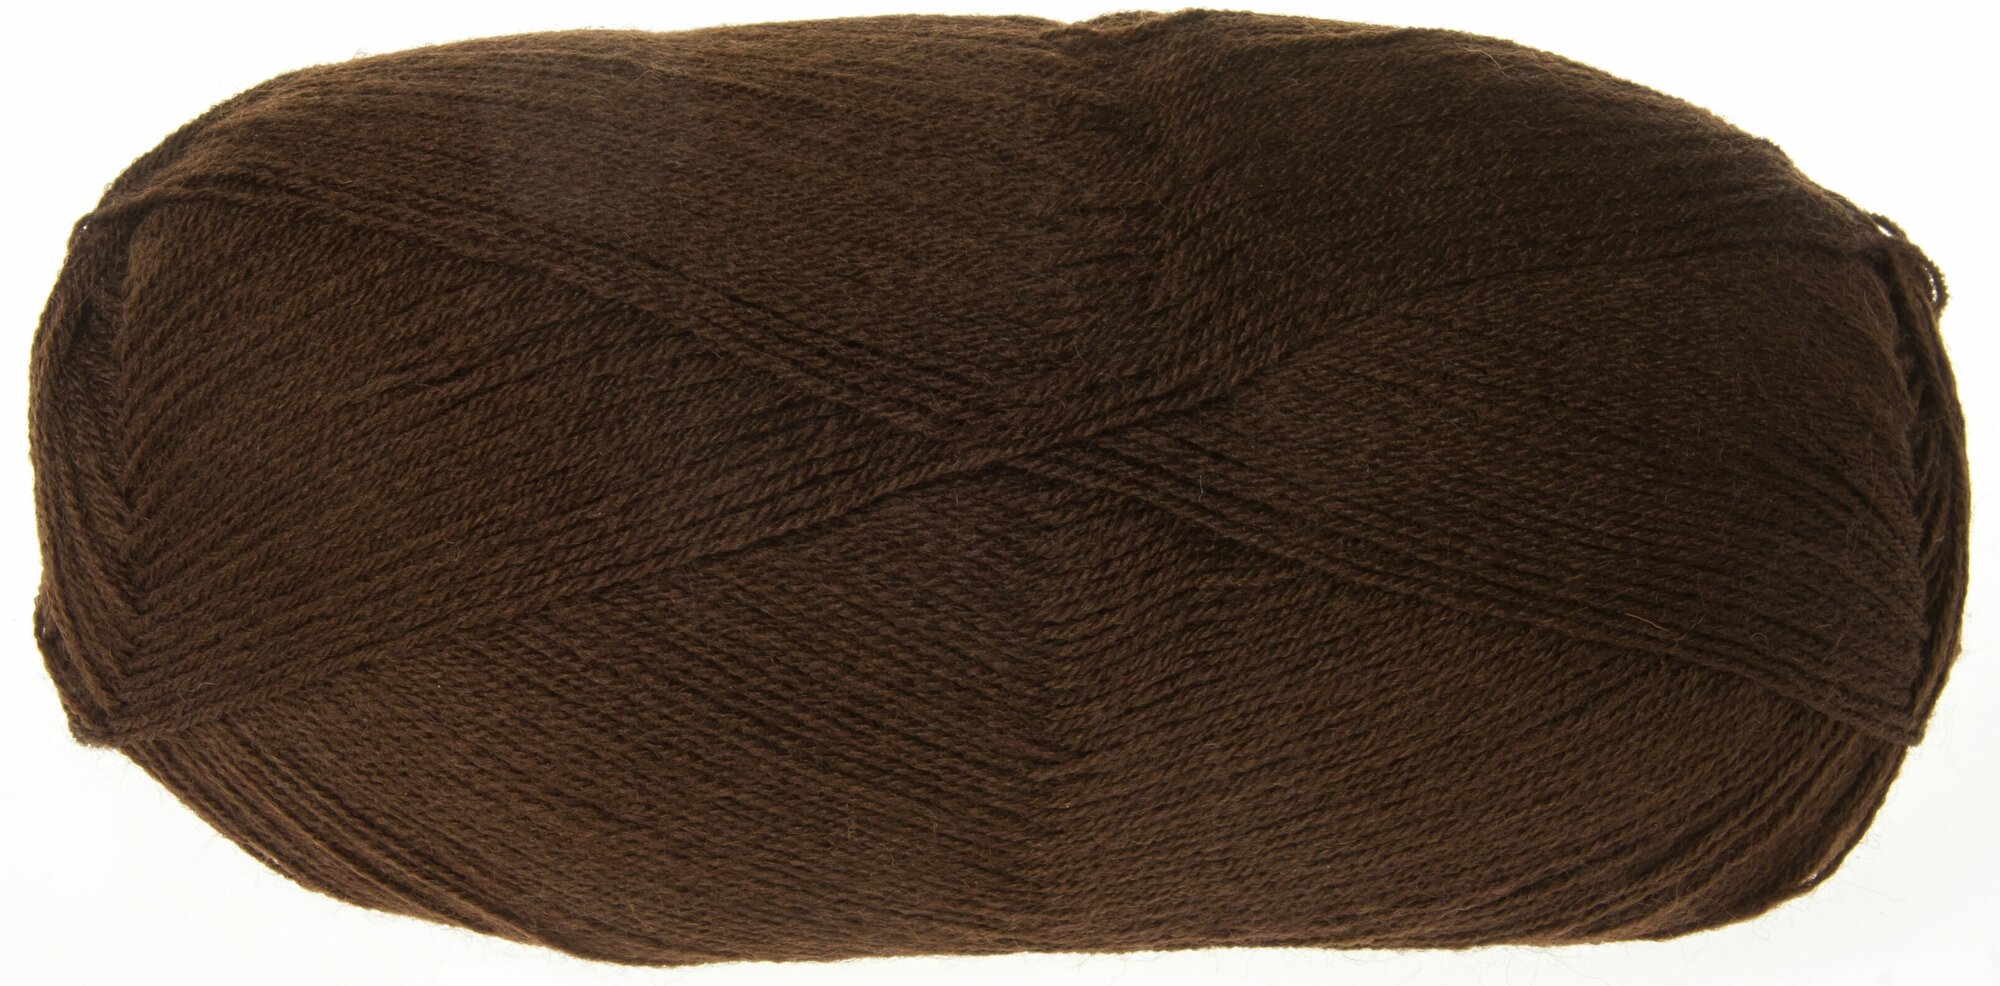 Пряжа Alize Lanagold 800 коричневый (26), 51%акрил/49%шерсть, 800м, 100г, 2шт